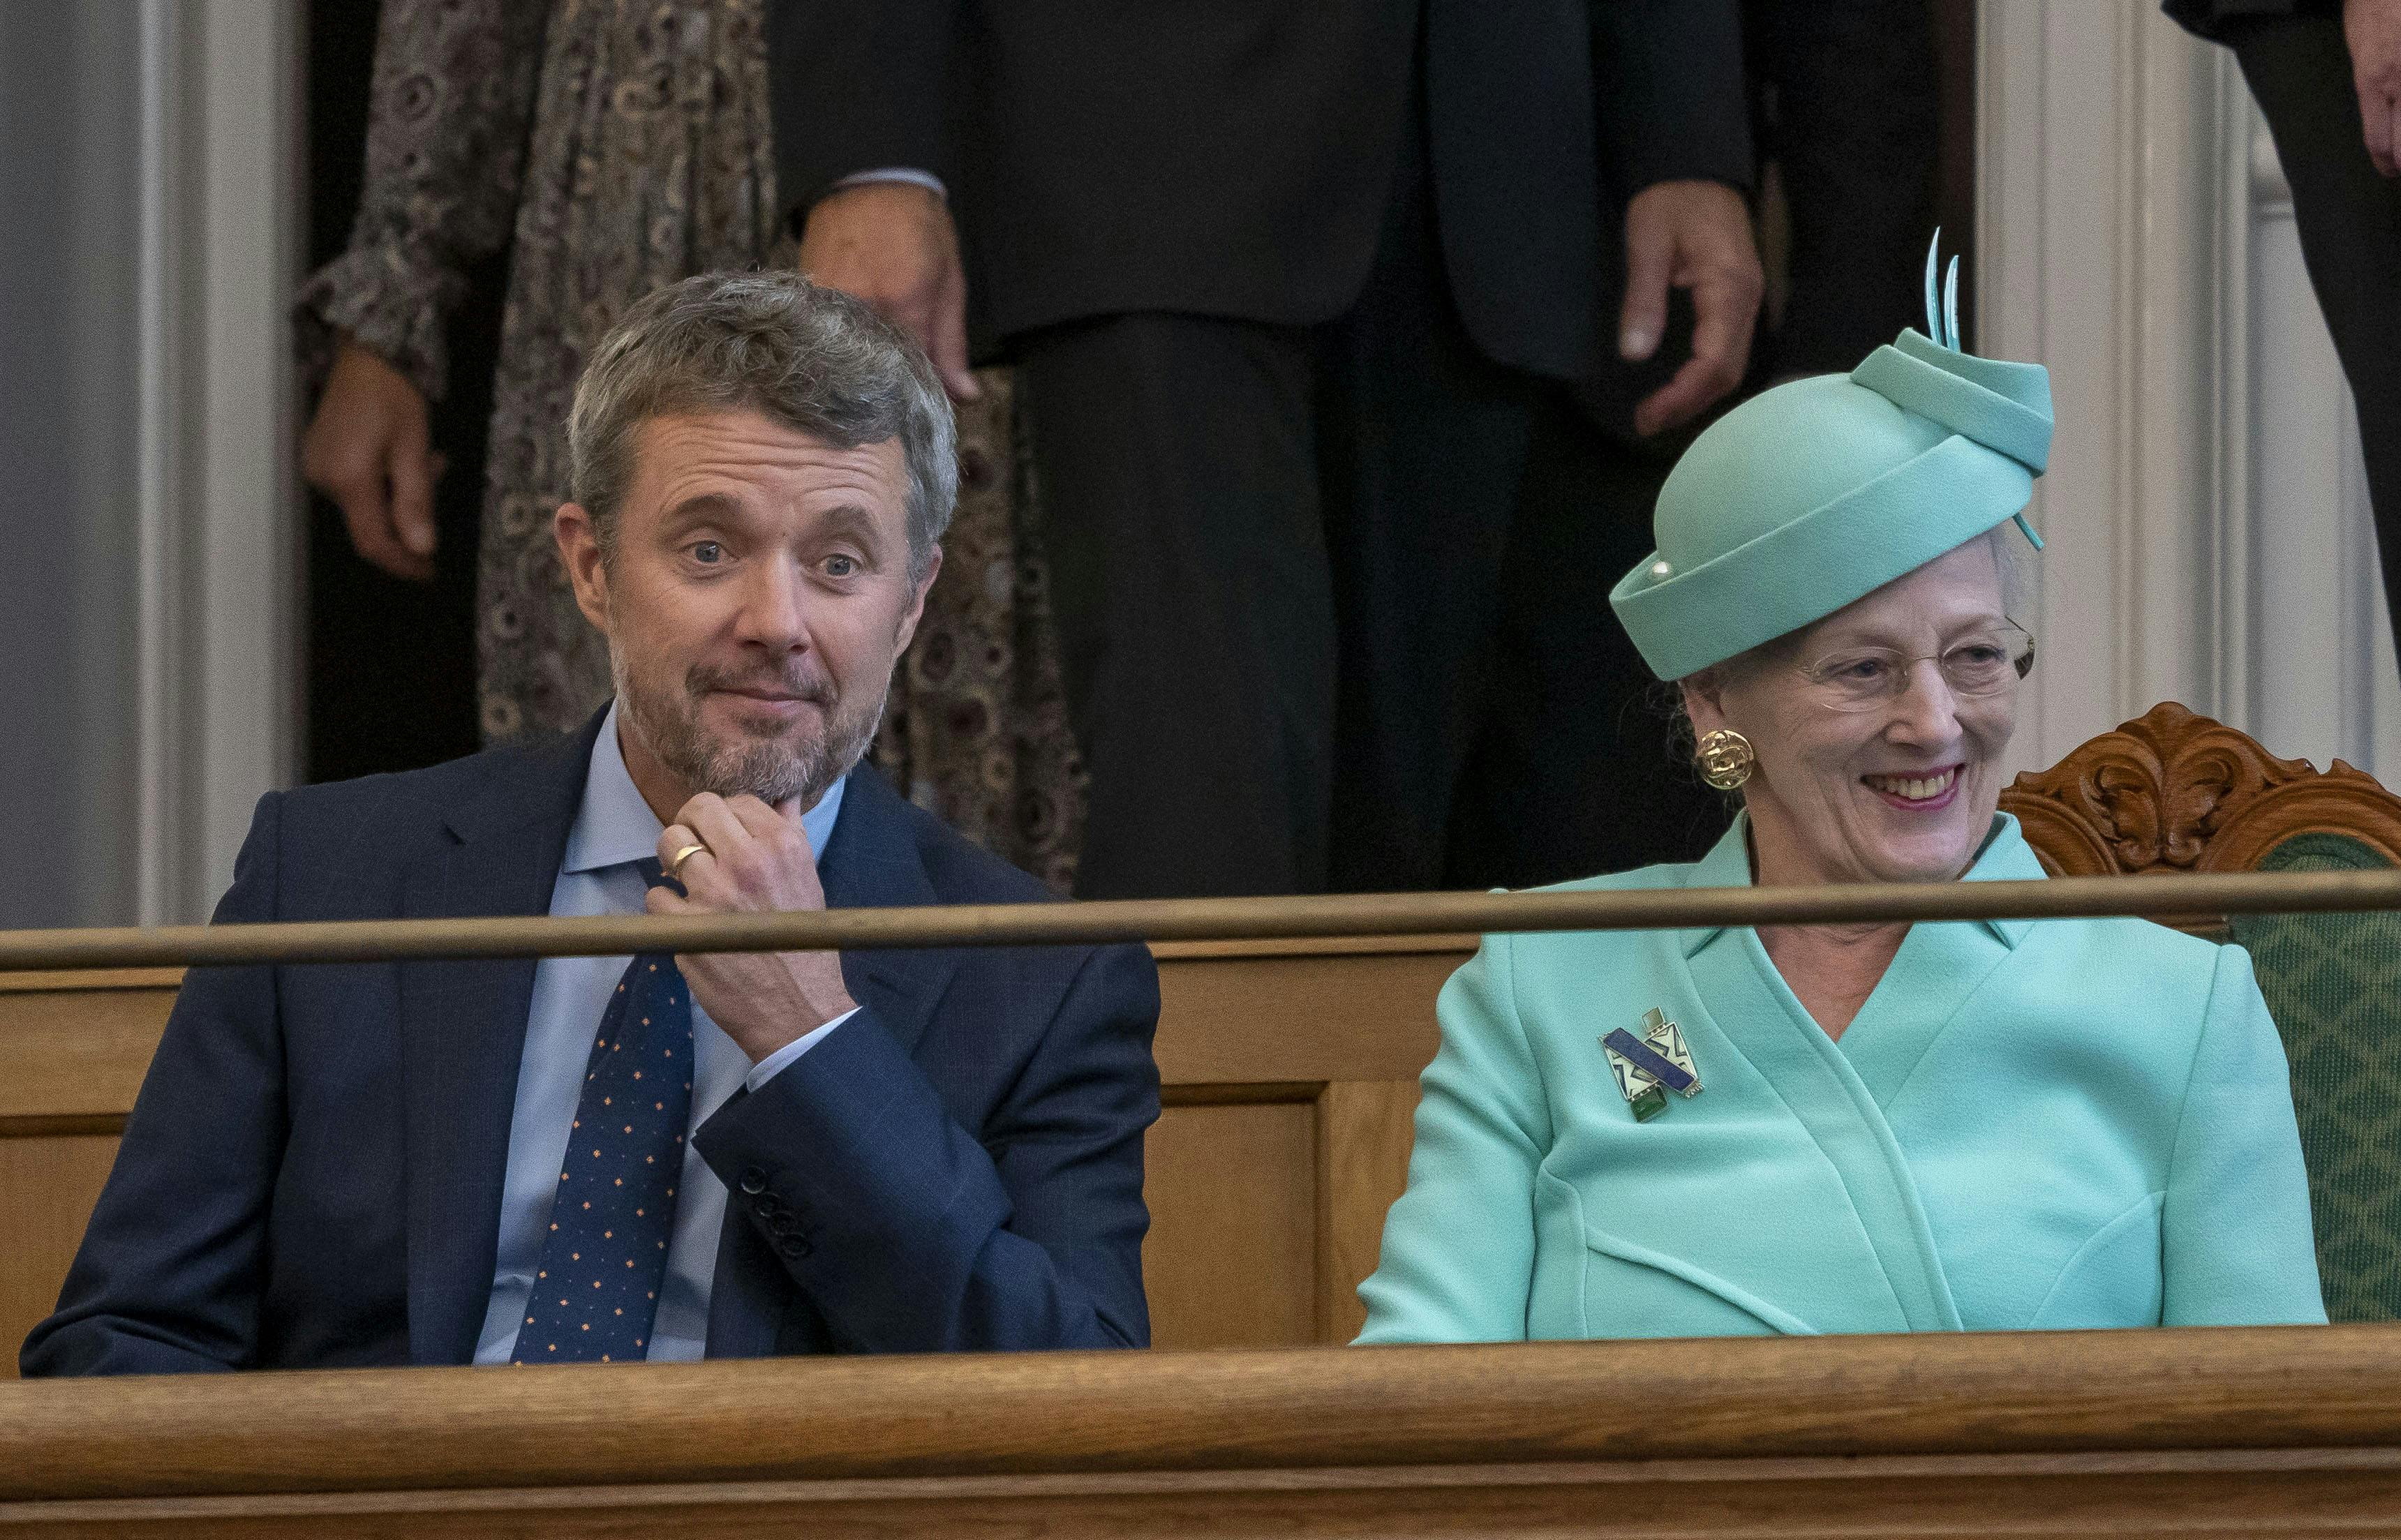 Der hersker ingen tvivl om, at danskerne er klar til tronskiftet, hvor dronning Margrethe overdrager tronen til kronprins Frederik. Flere bus- og togafgange er i hvert fald udsolgt.&nbsp;